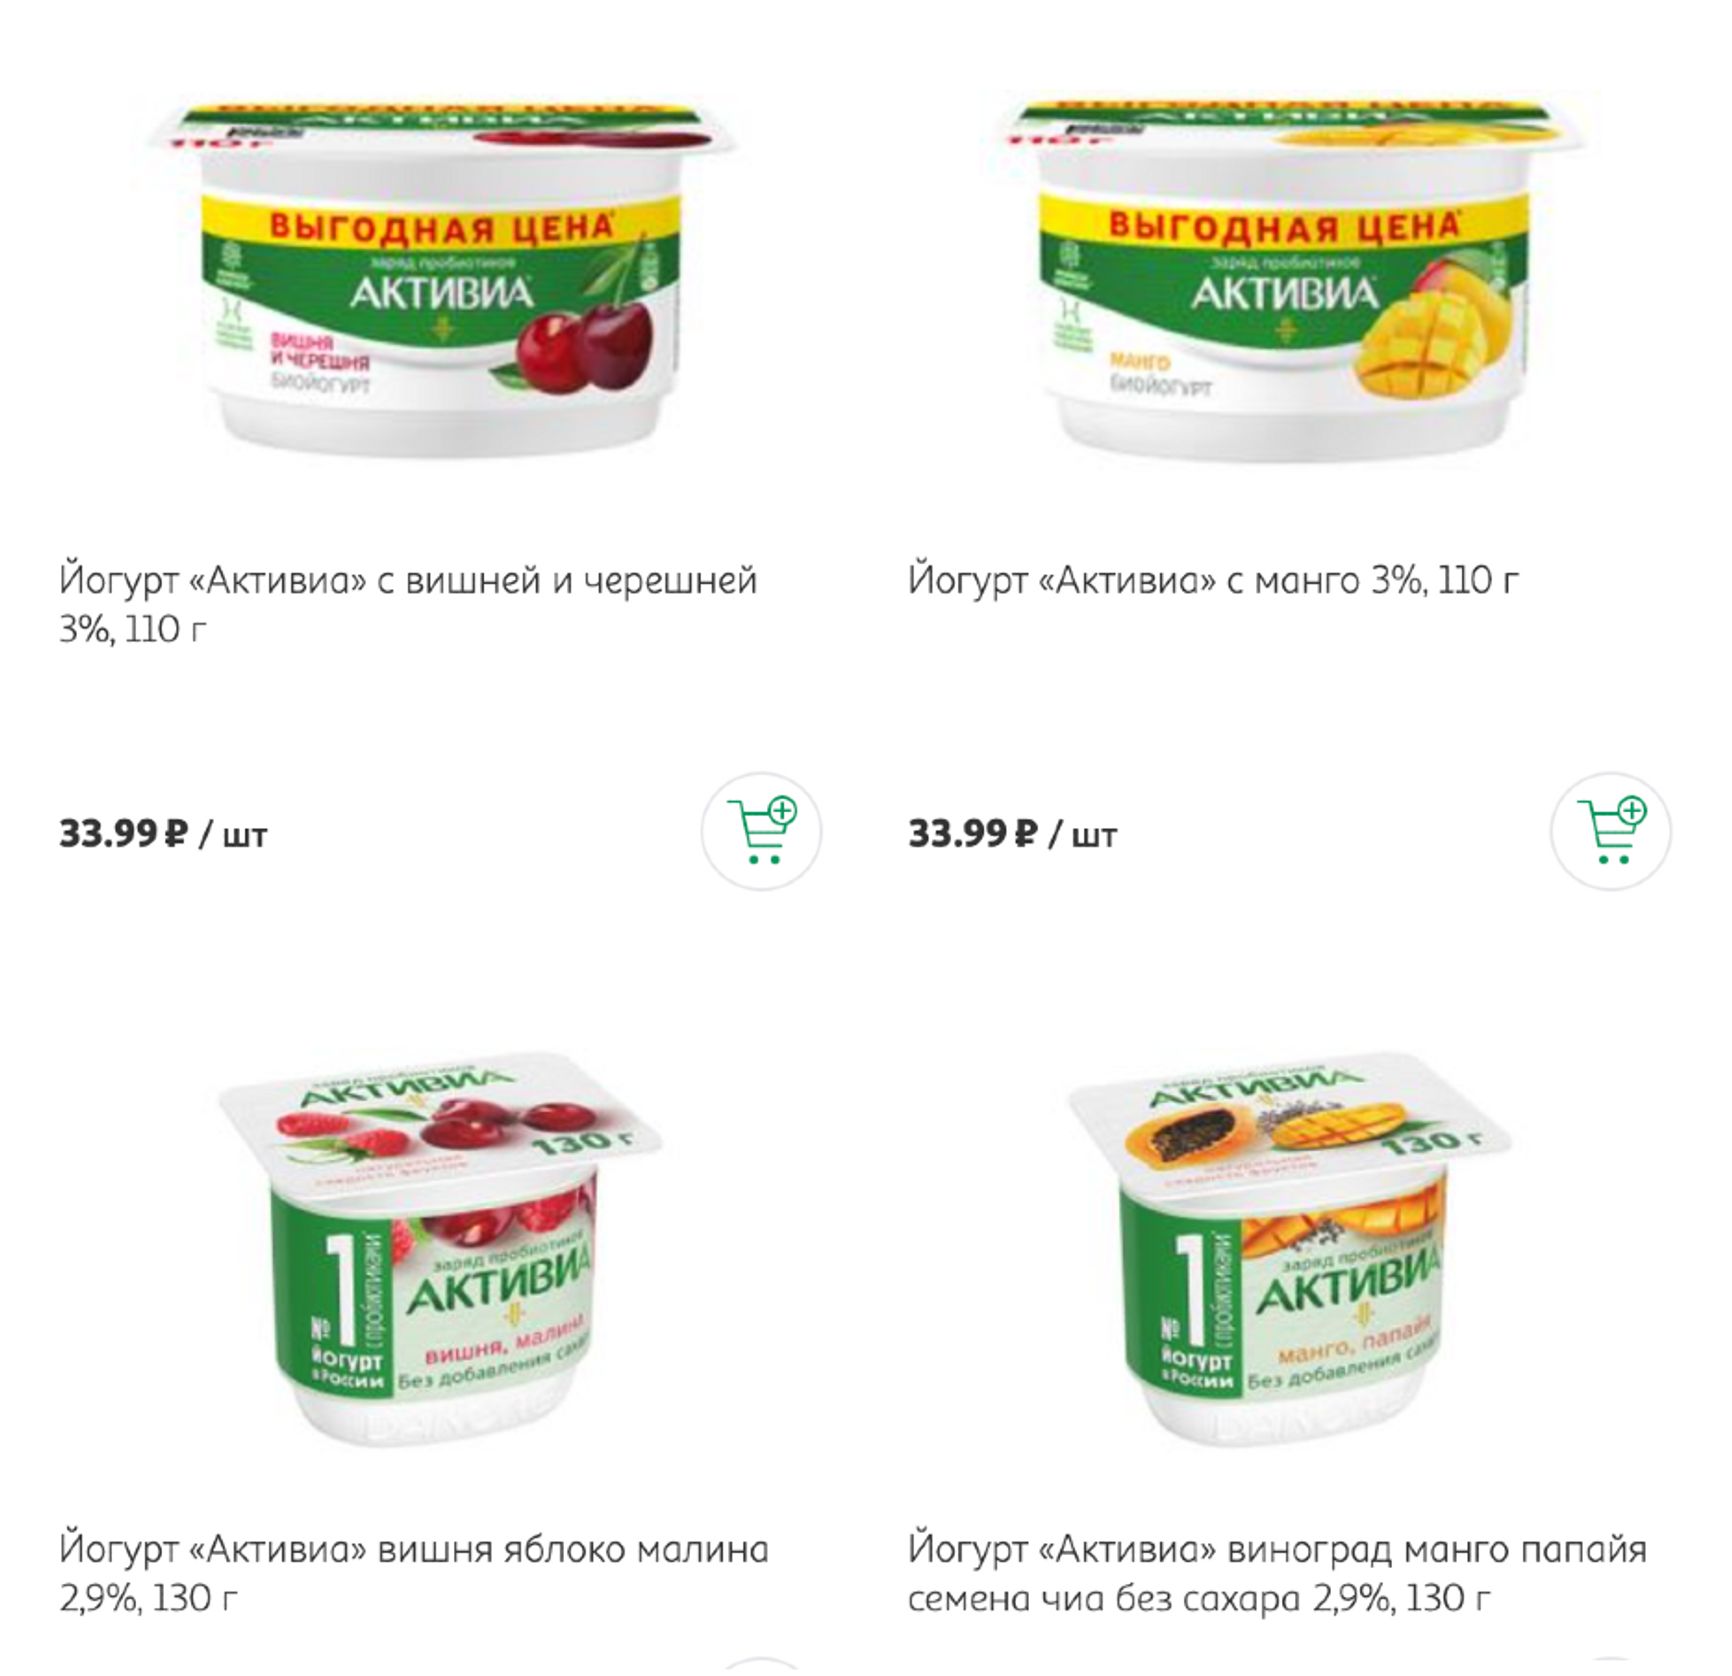 Еще один прием компании Danone — ввести новую упаковку йогурта Activia, на 20 г меньше, со специальной пометкой (скриншот из каталога гипермаркета Auchan, 13 октября 2022 года)